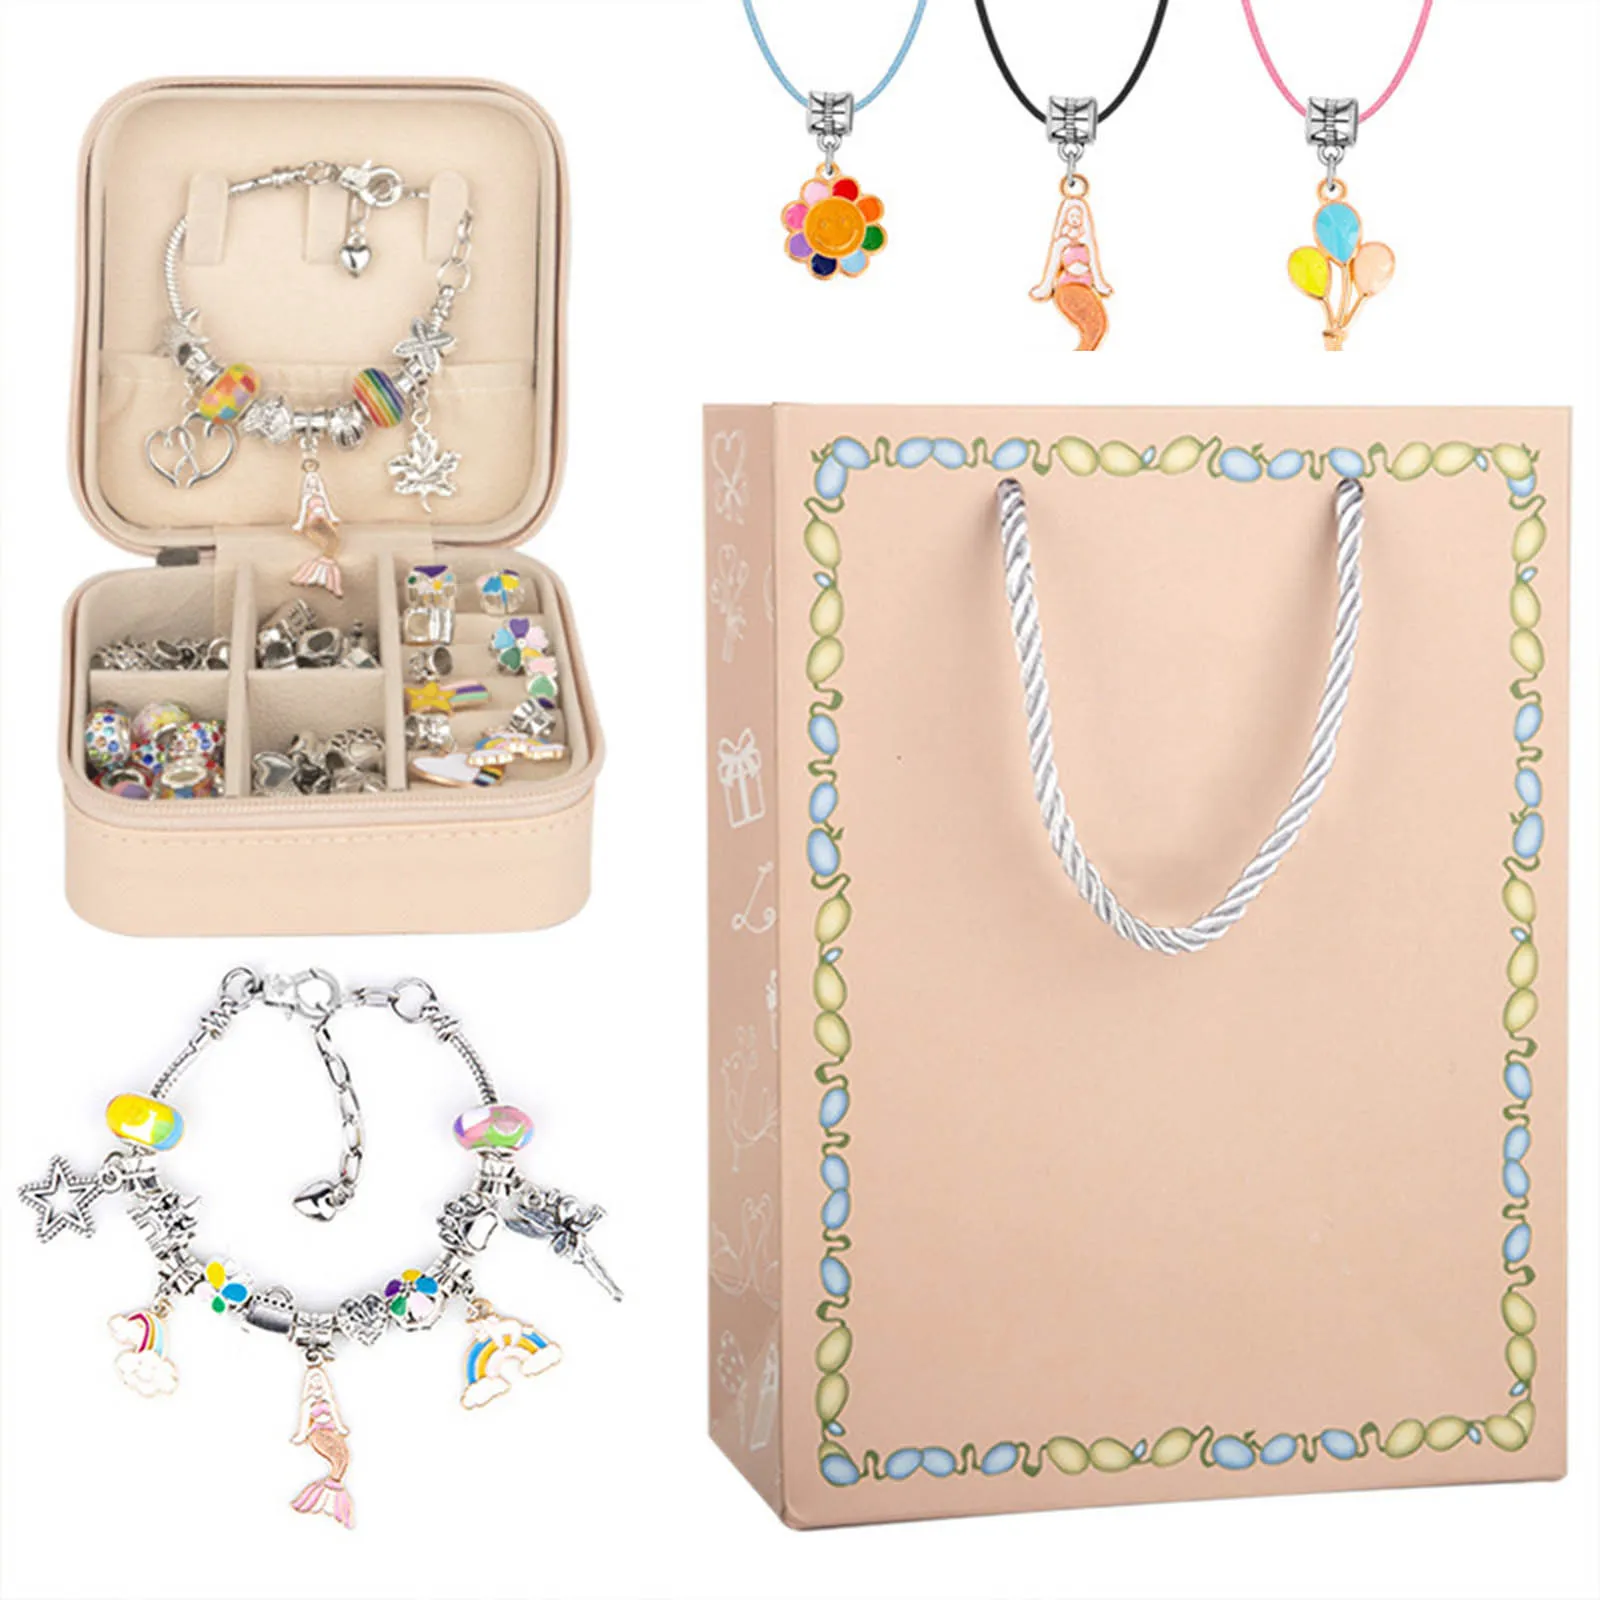 Caixa de jóias Express Melhores Desejos com Artesanatos Menina Adolescente Fazer Jóias Kit com Caixa de Jóias e Saco de Presente